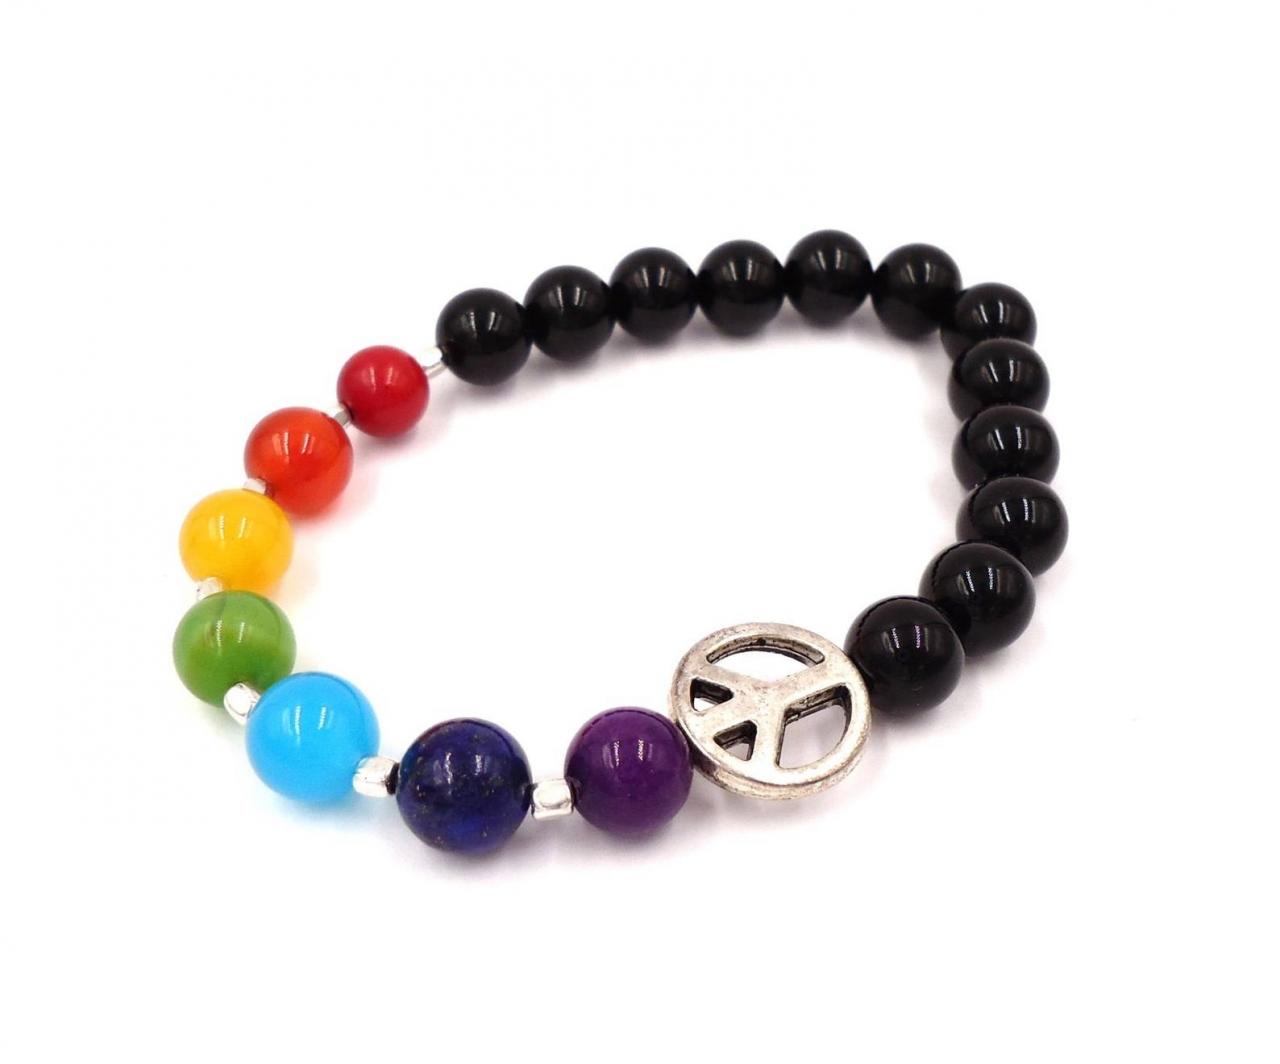 Peace Bracelet - Peace Charm Bracelet - Energy Bracelet - Chakra Bracelet - Yoga Jewelry - Mala Beads - Gemstone Jewelry - Chakra Jewelry